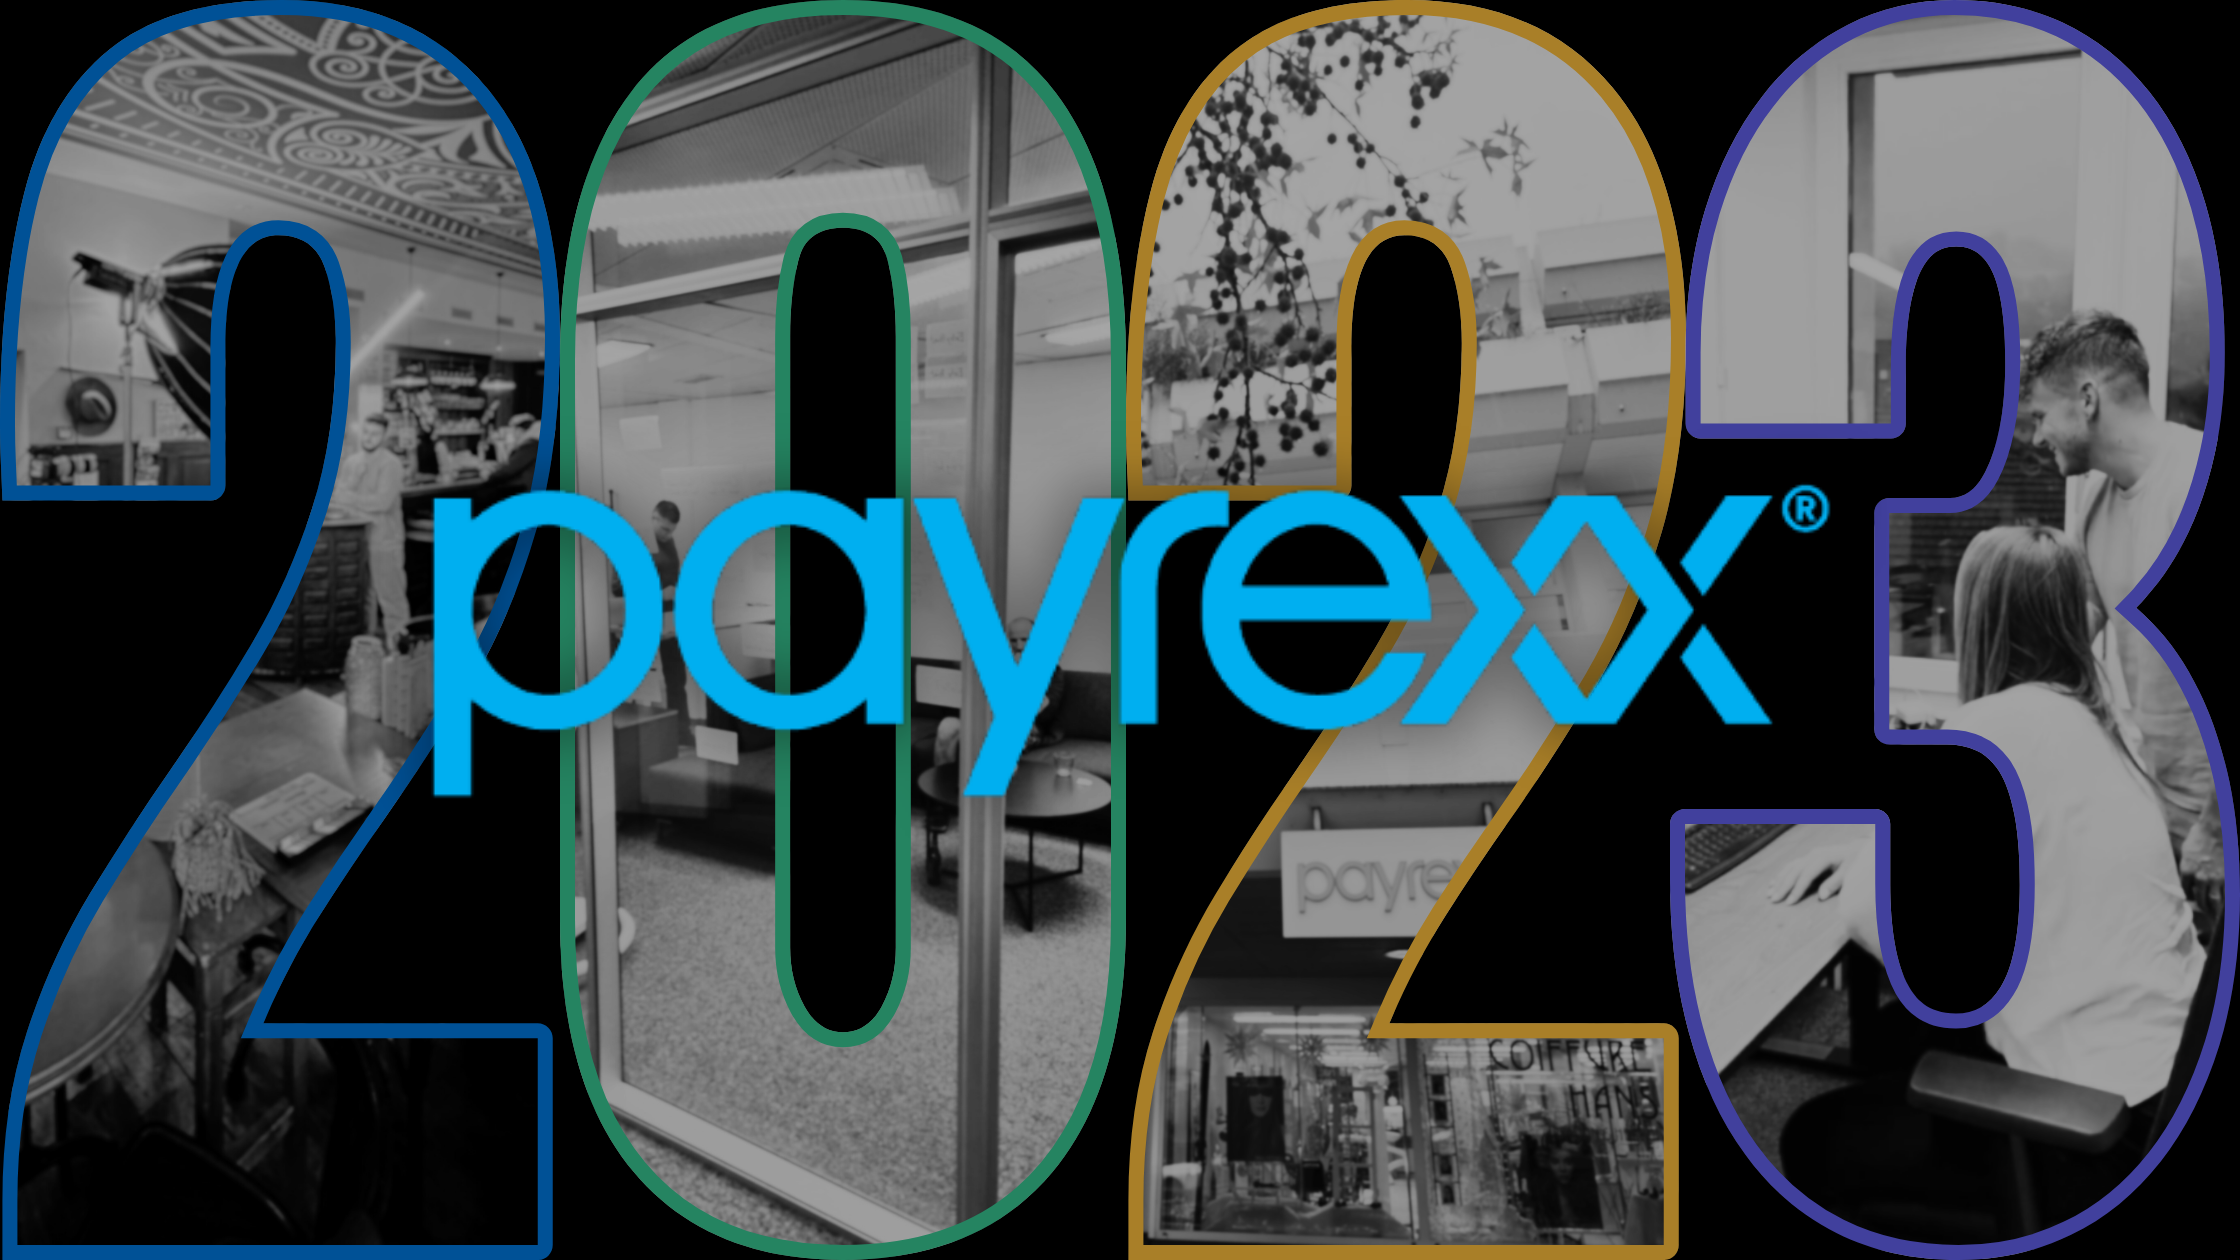 Payrexx im Aufschwung: Ein vielversprechendes Geschäftsjahr 2023 mit Zuwachs in allen Bereichen